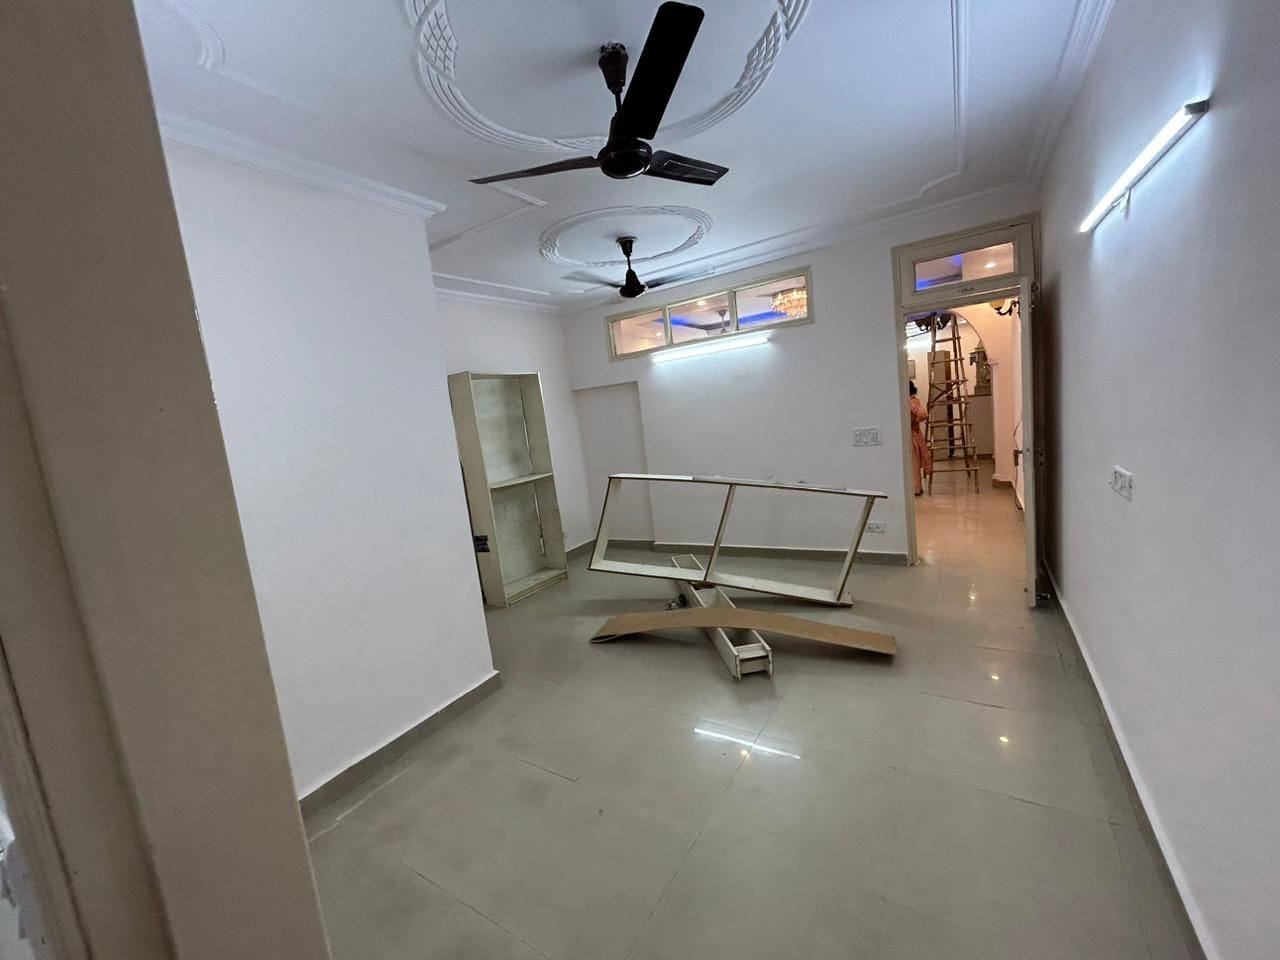 2 Bed/ 2 Bath Rent Apartment/ Flat; 900 sq. ft. carpet area, Semi Furnished for rent @Jangpura New delhi